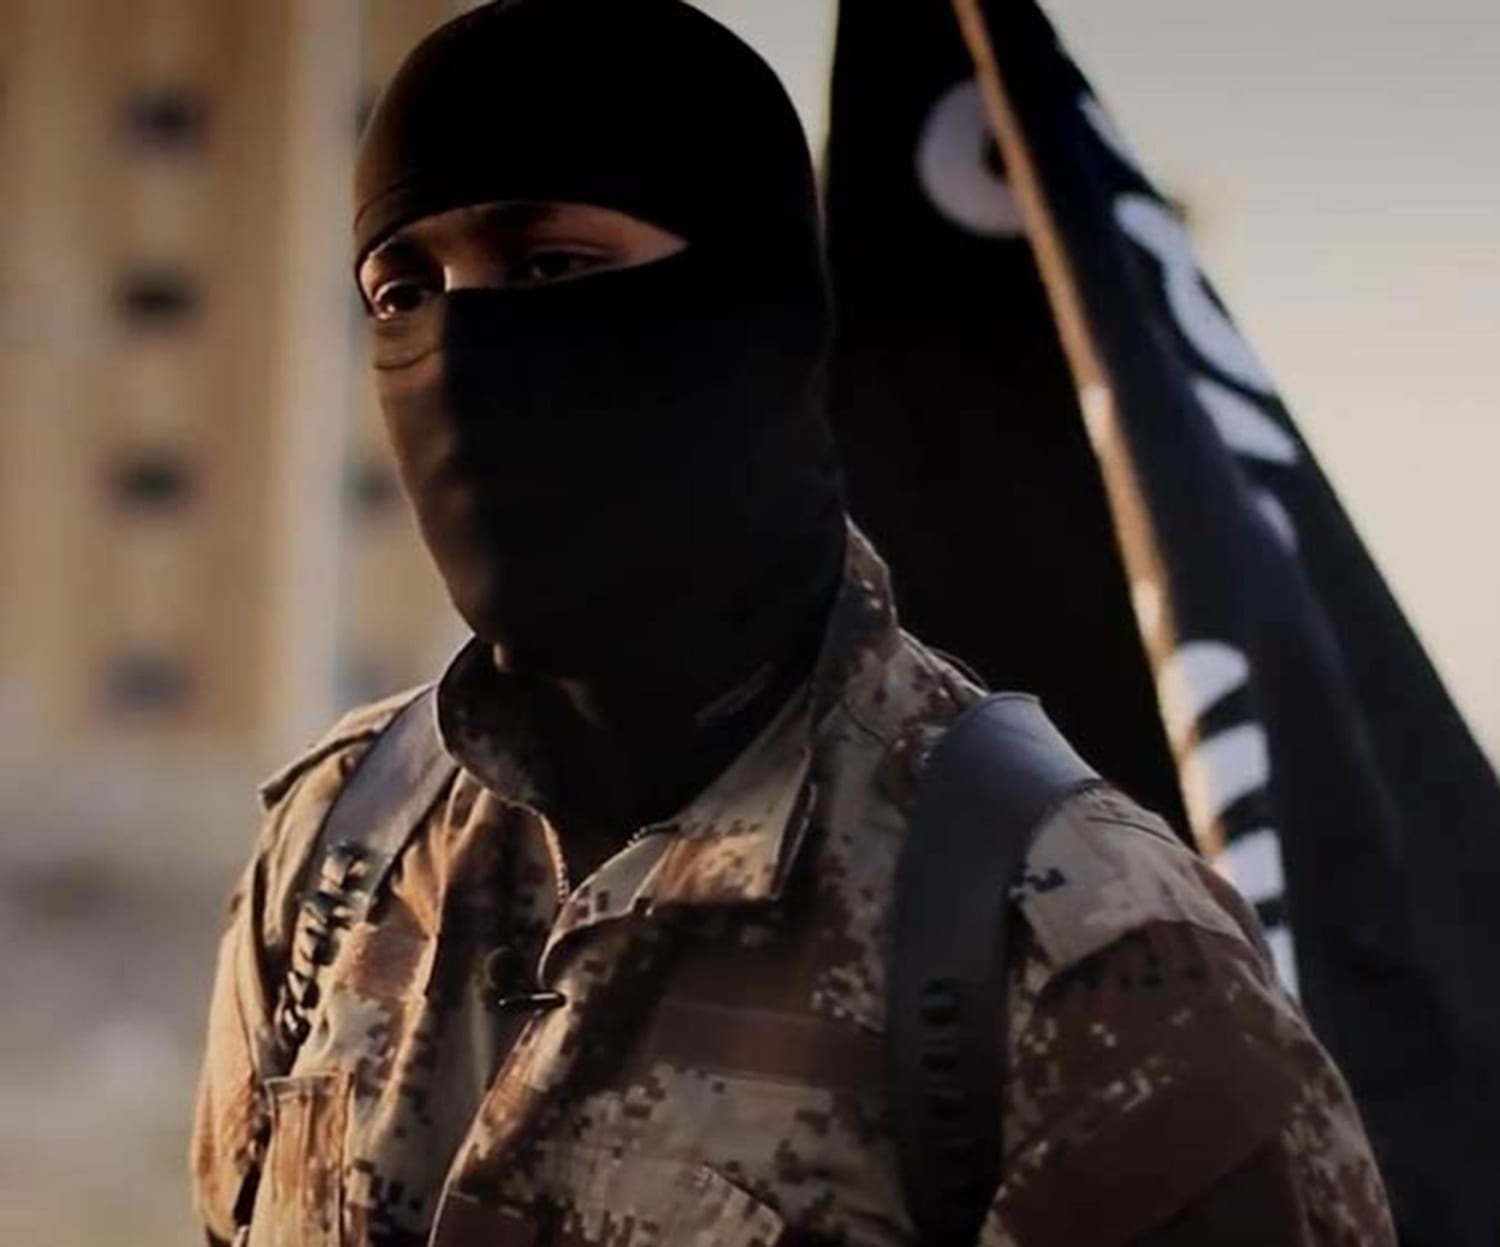 Видео от первого лица игил крокус сити. Исламский террорист в маске.